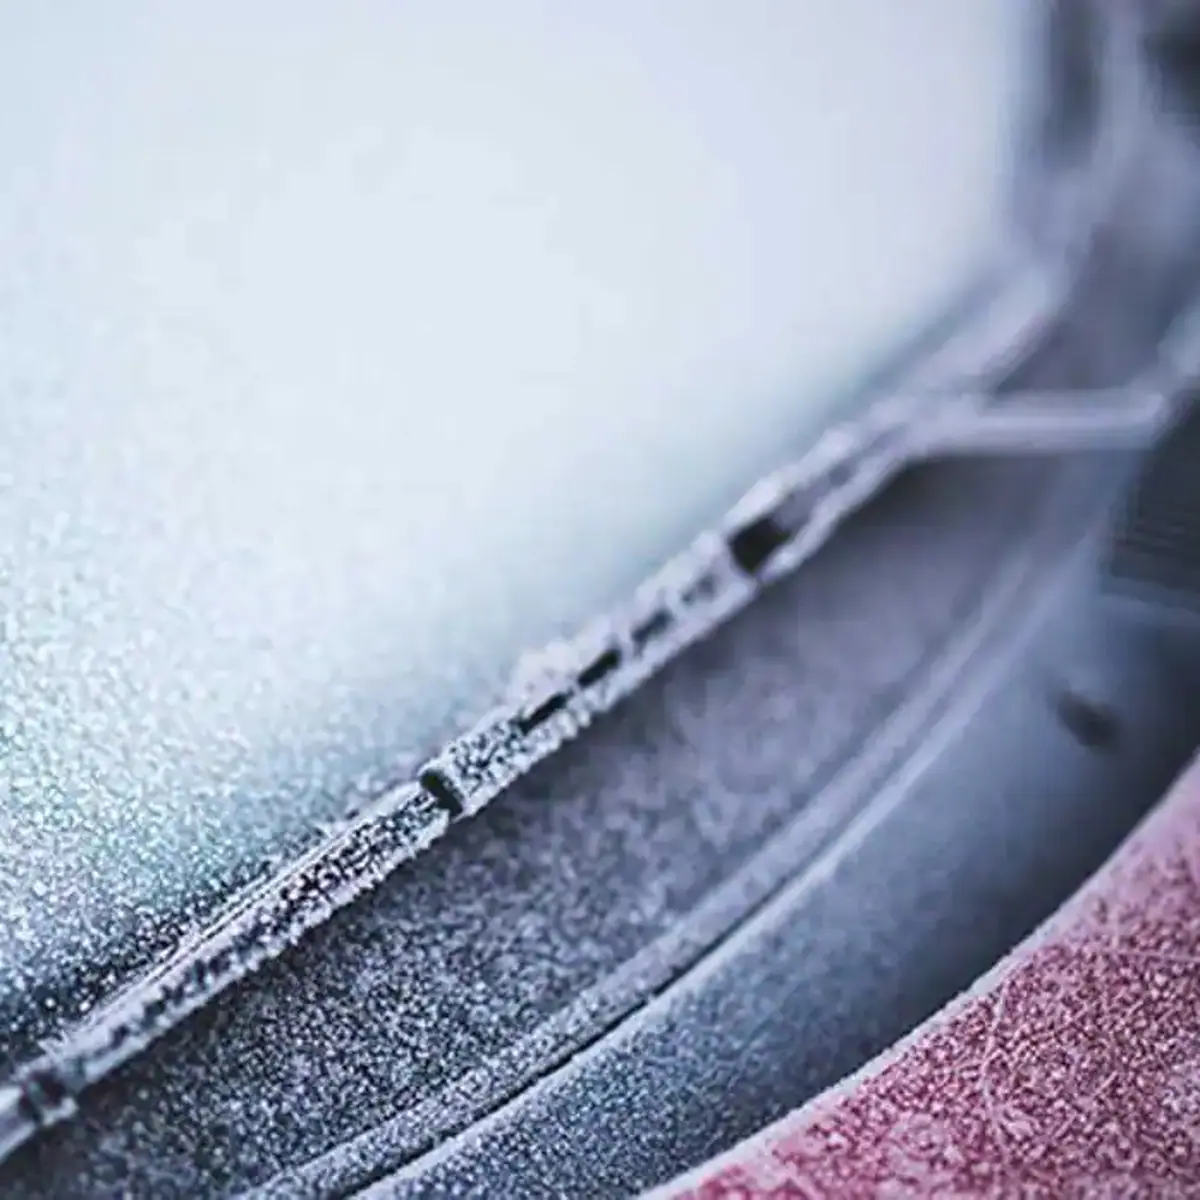 La DGT avisa: nunca quites así el hielo del cristal del coche, rascador  hielo coche 